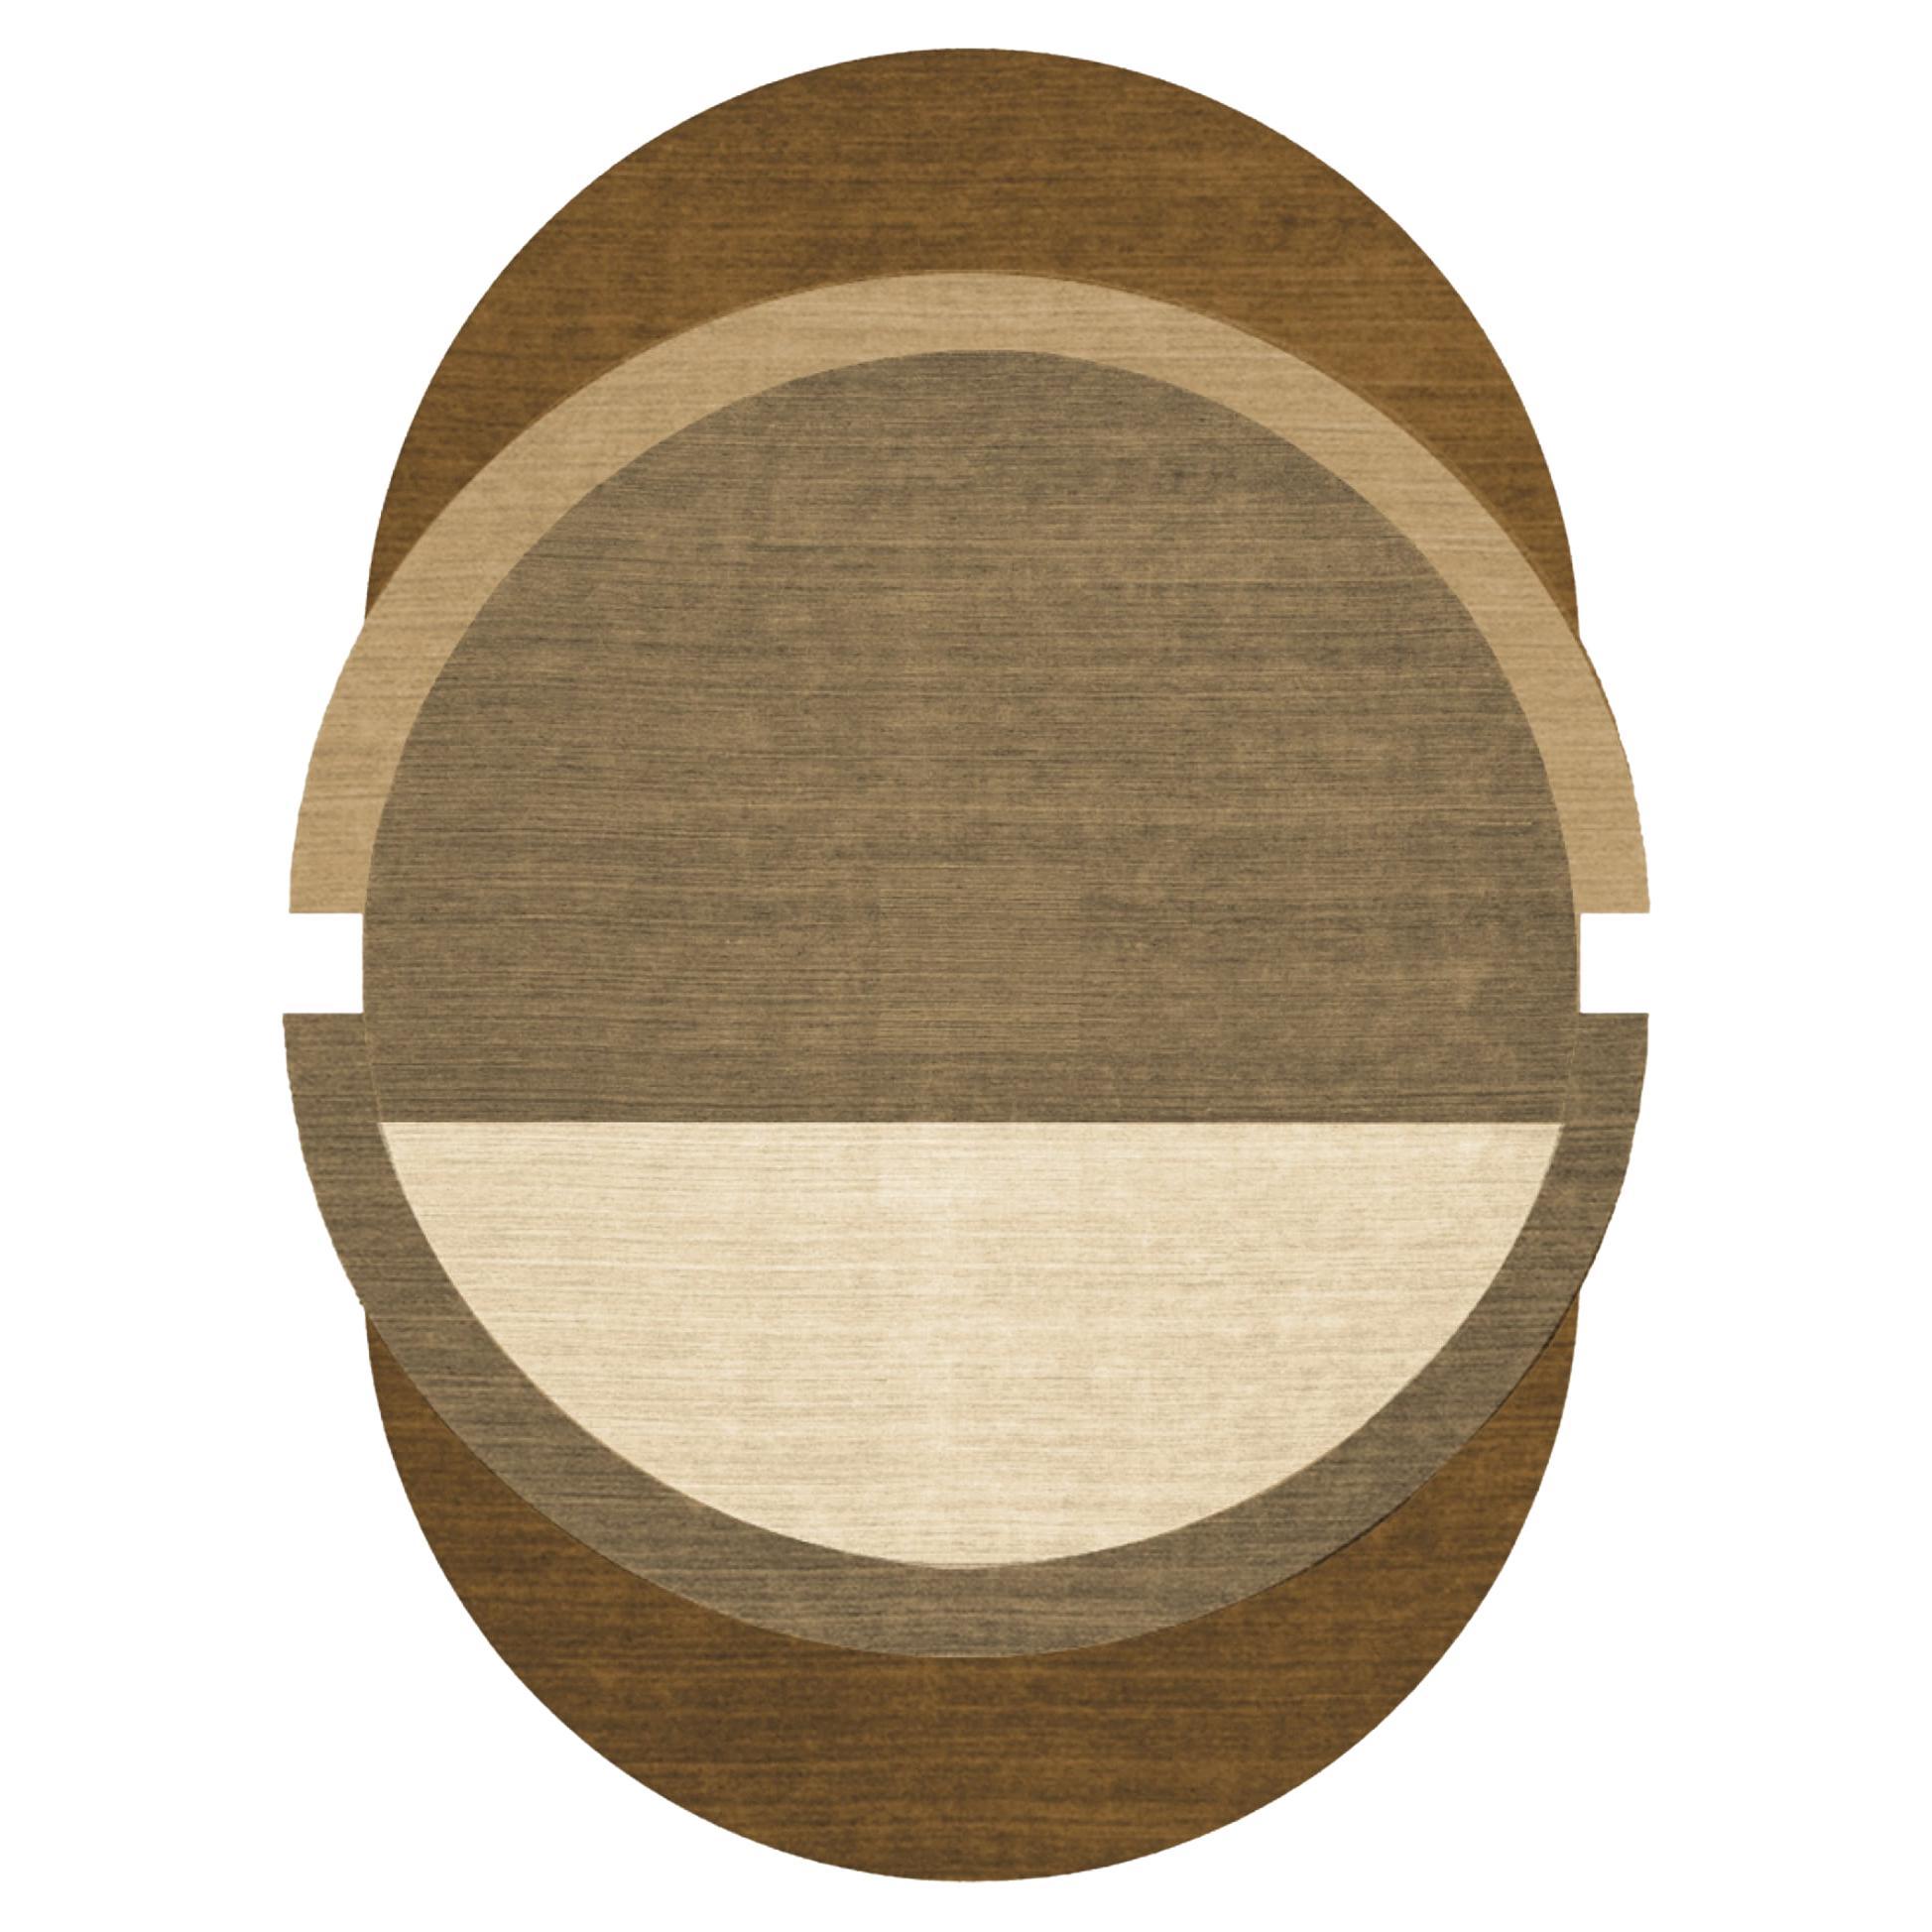 Tapis contemporain de forme ovale à motif géométrique touffeté à la main crème et marron